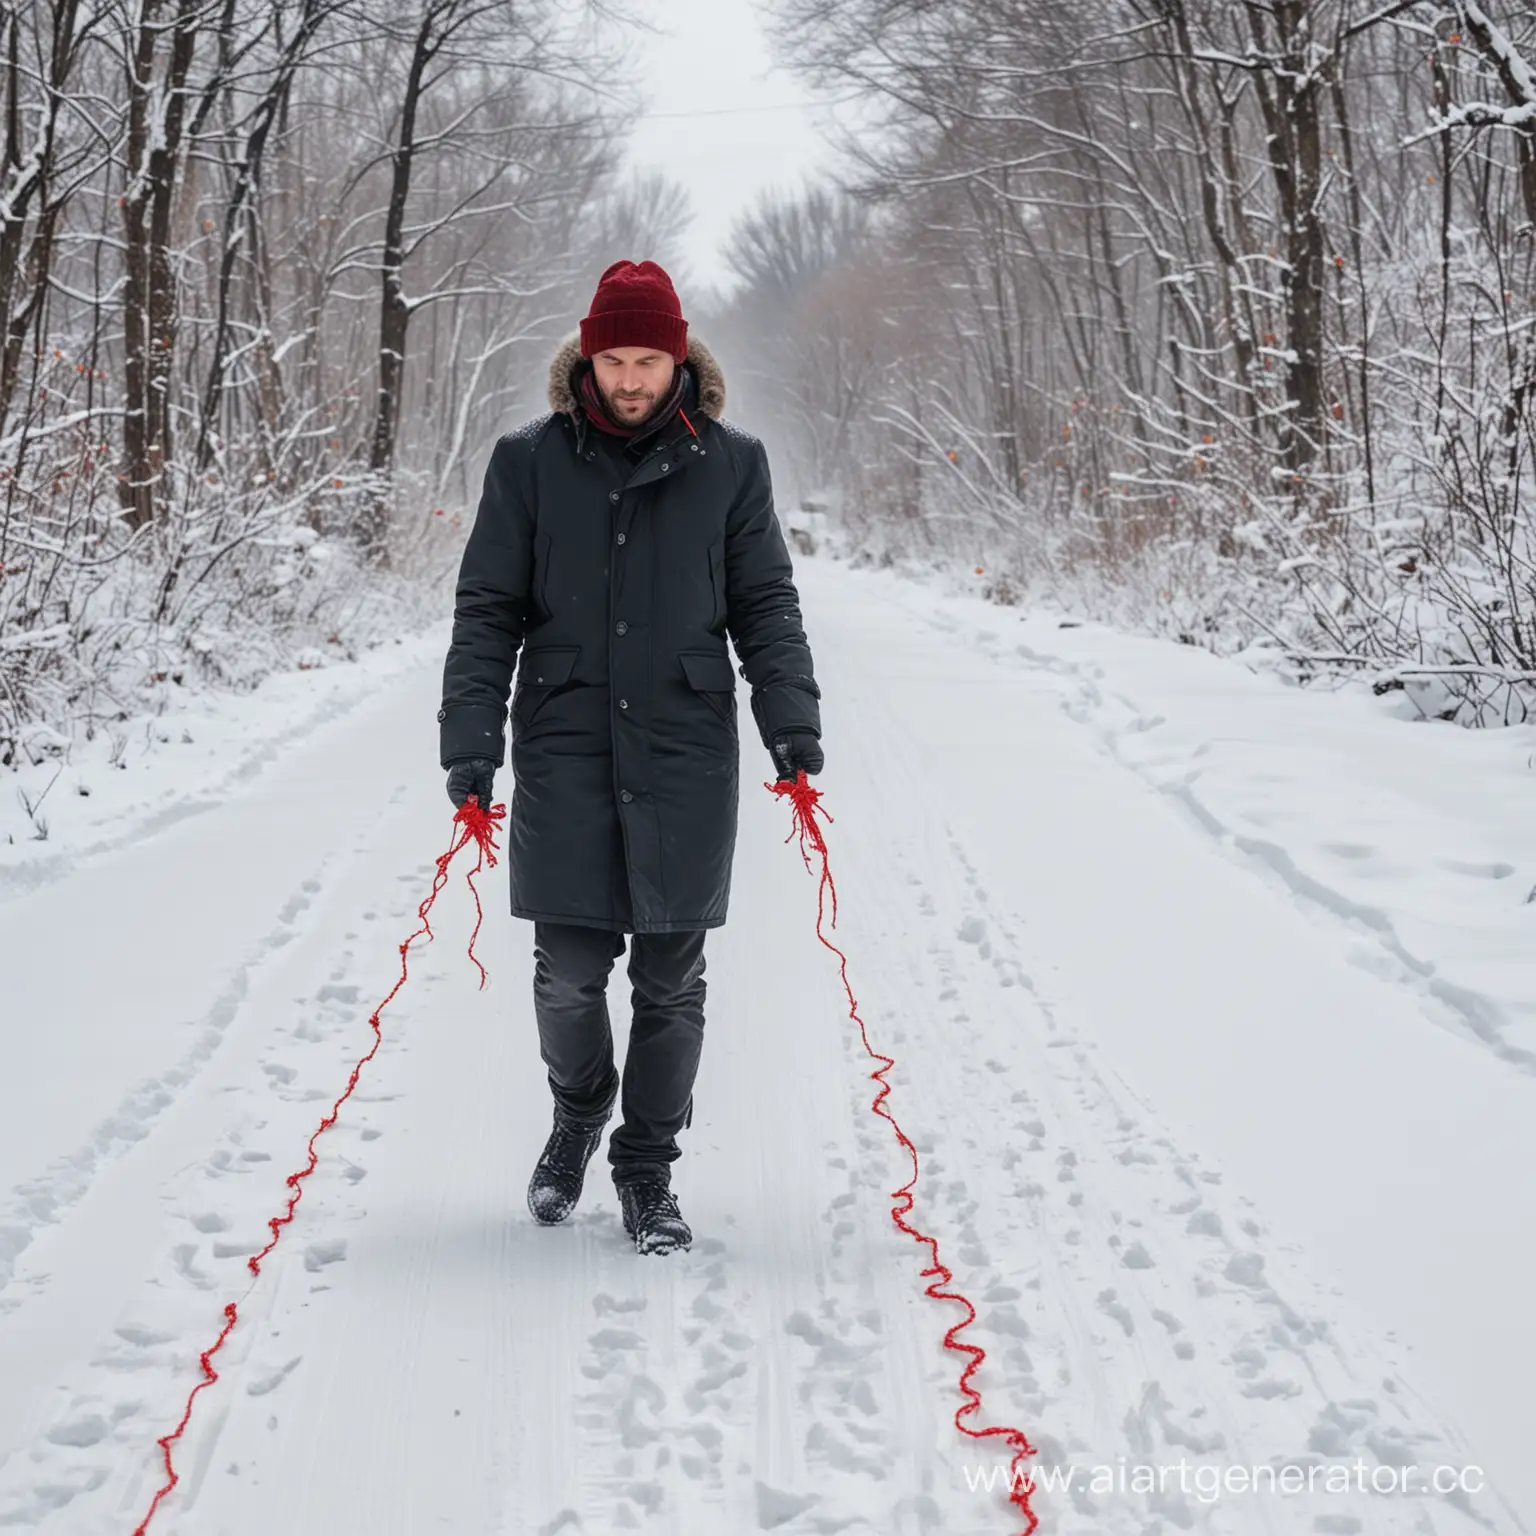 мужчина идёт по снежной дороге , у него в руках красная нить, которая тянется за ним